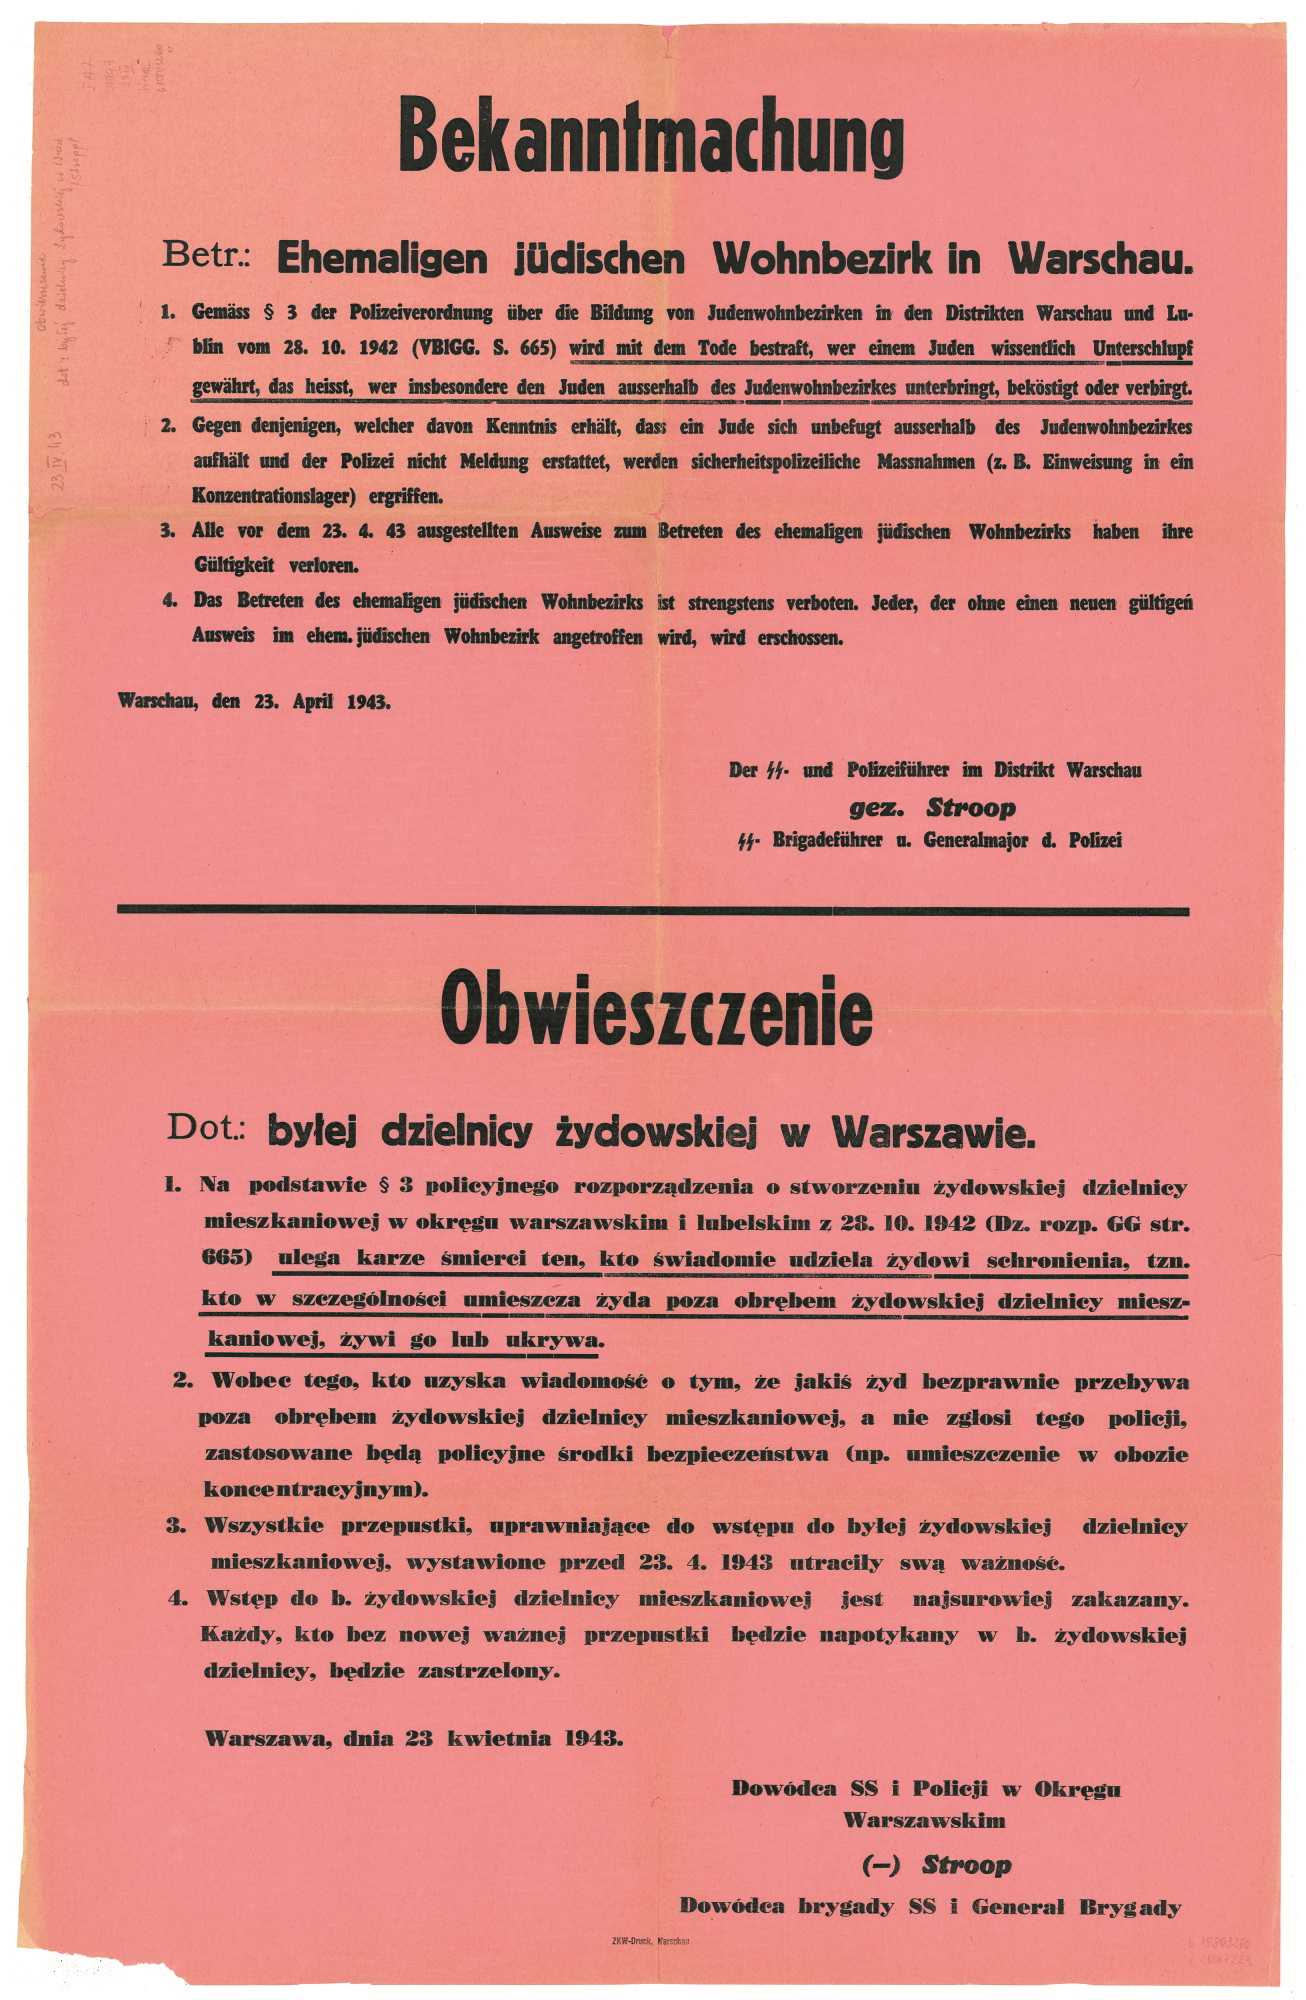 Obwieszczenie o karze śmierci za pomoc Żydom podpisane przez dowódcę SS i Policji Jürgena Stroppa z 23 kwietnia 1943 r. 